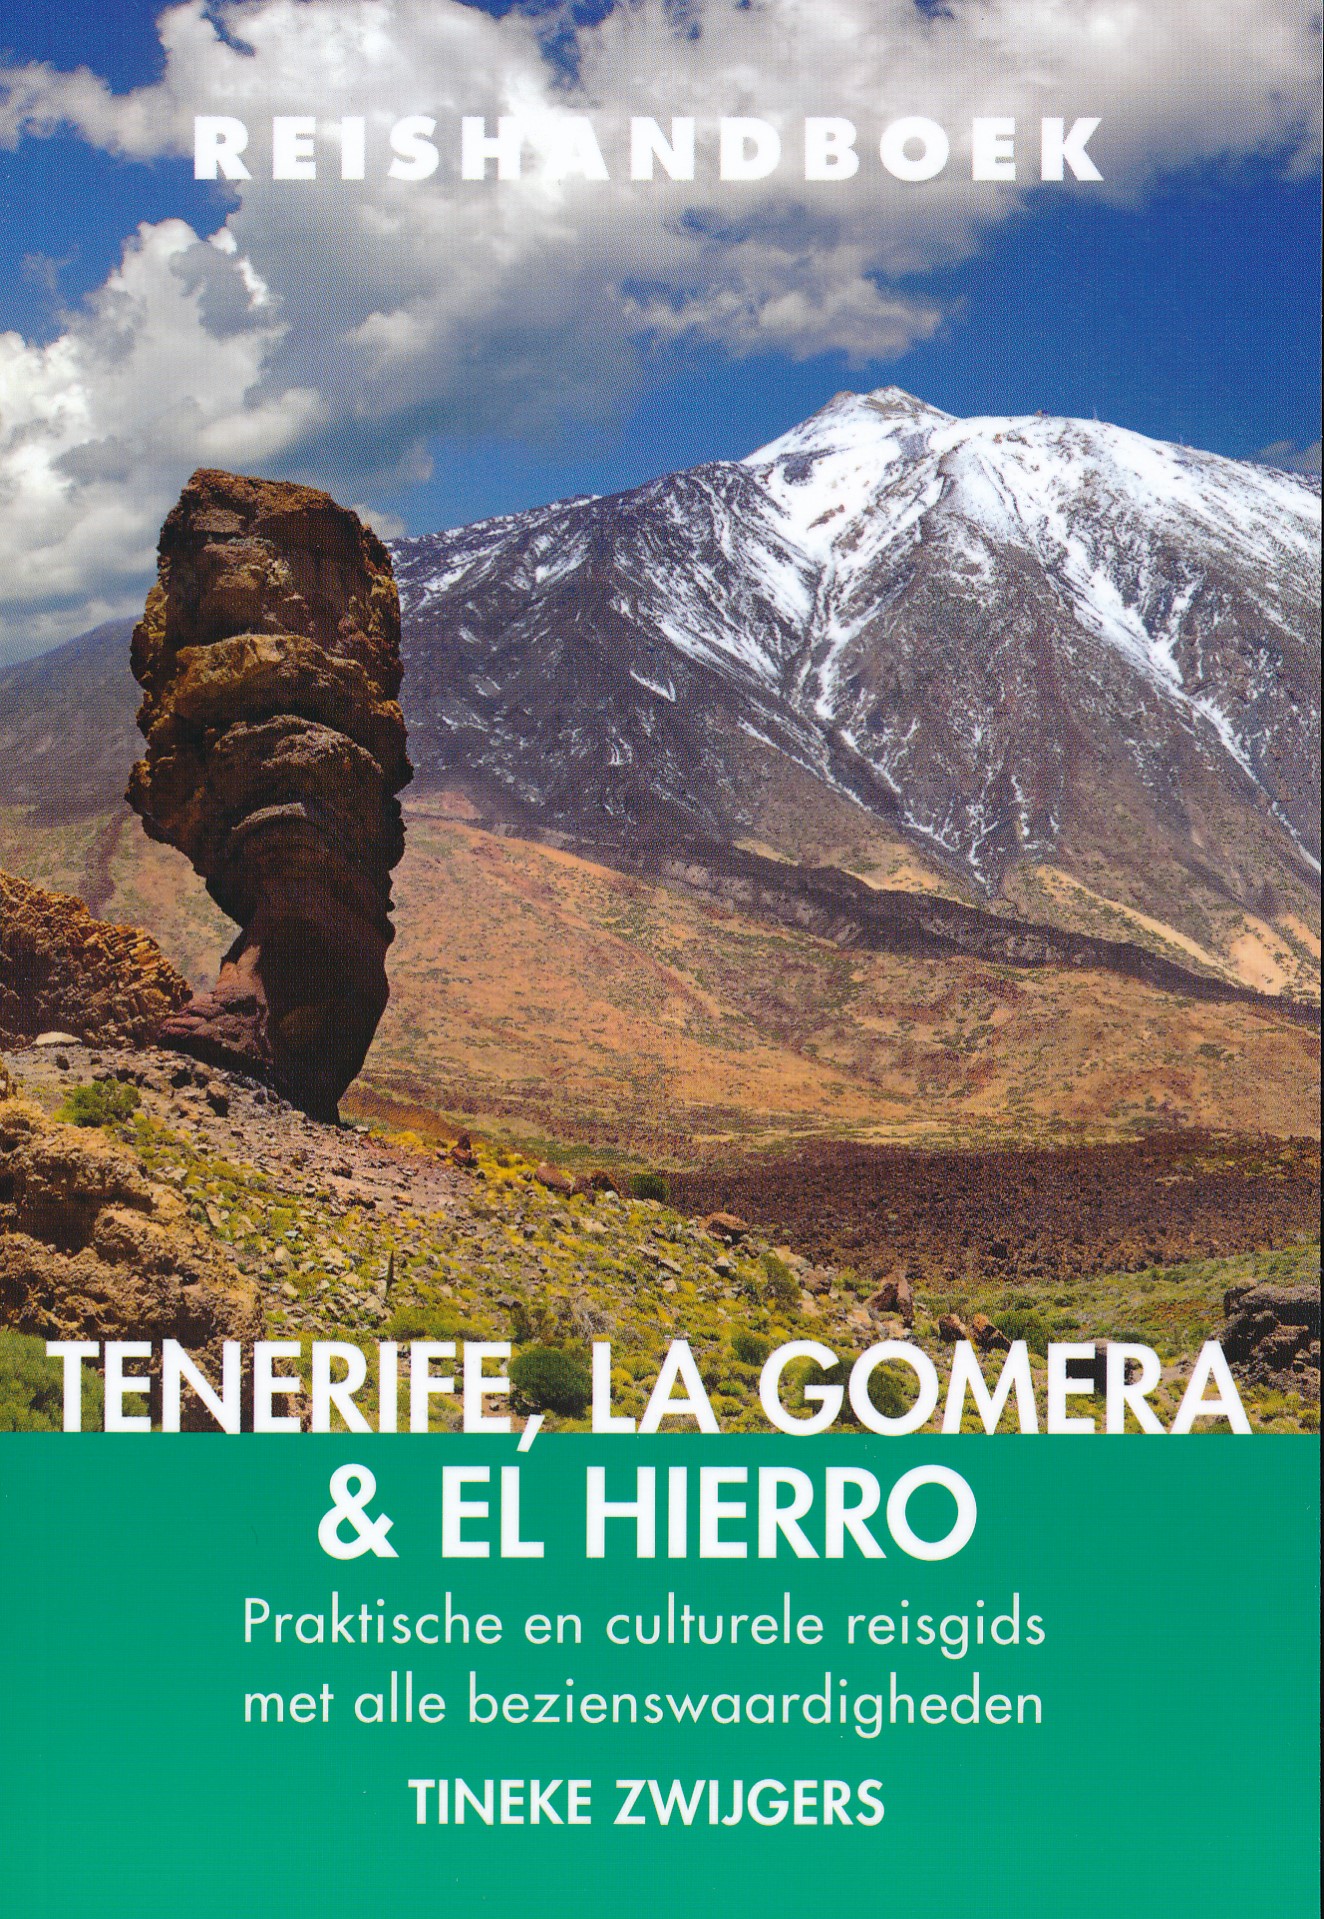 Online bestellen: Reisgids Reishandboek Tenerife, La Gomera, El Hierro | Uitgeverij Elmar